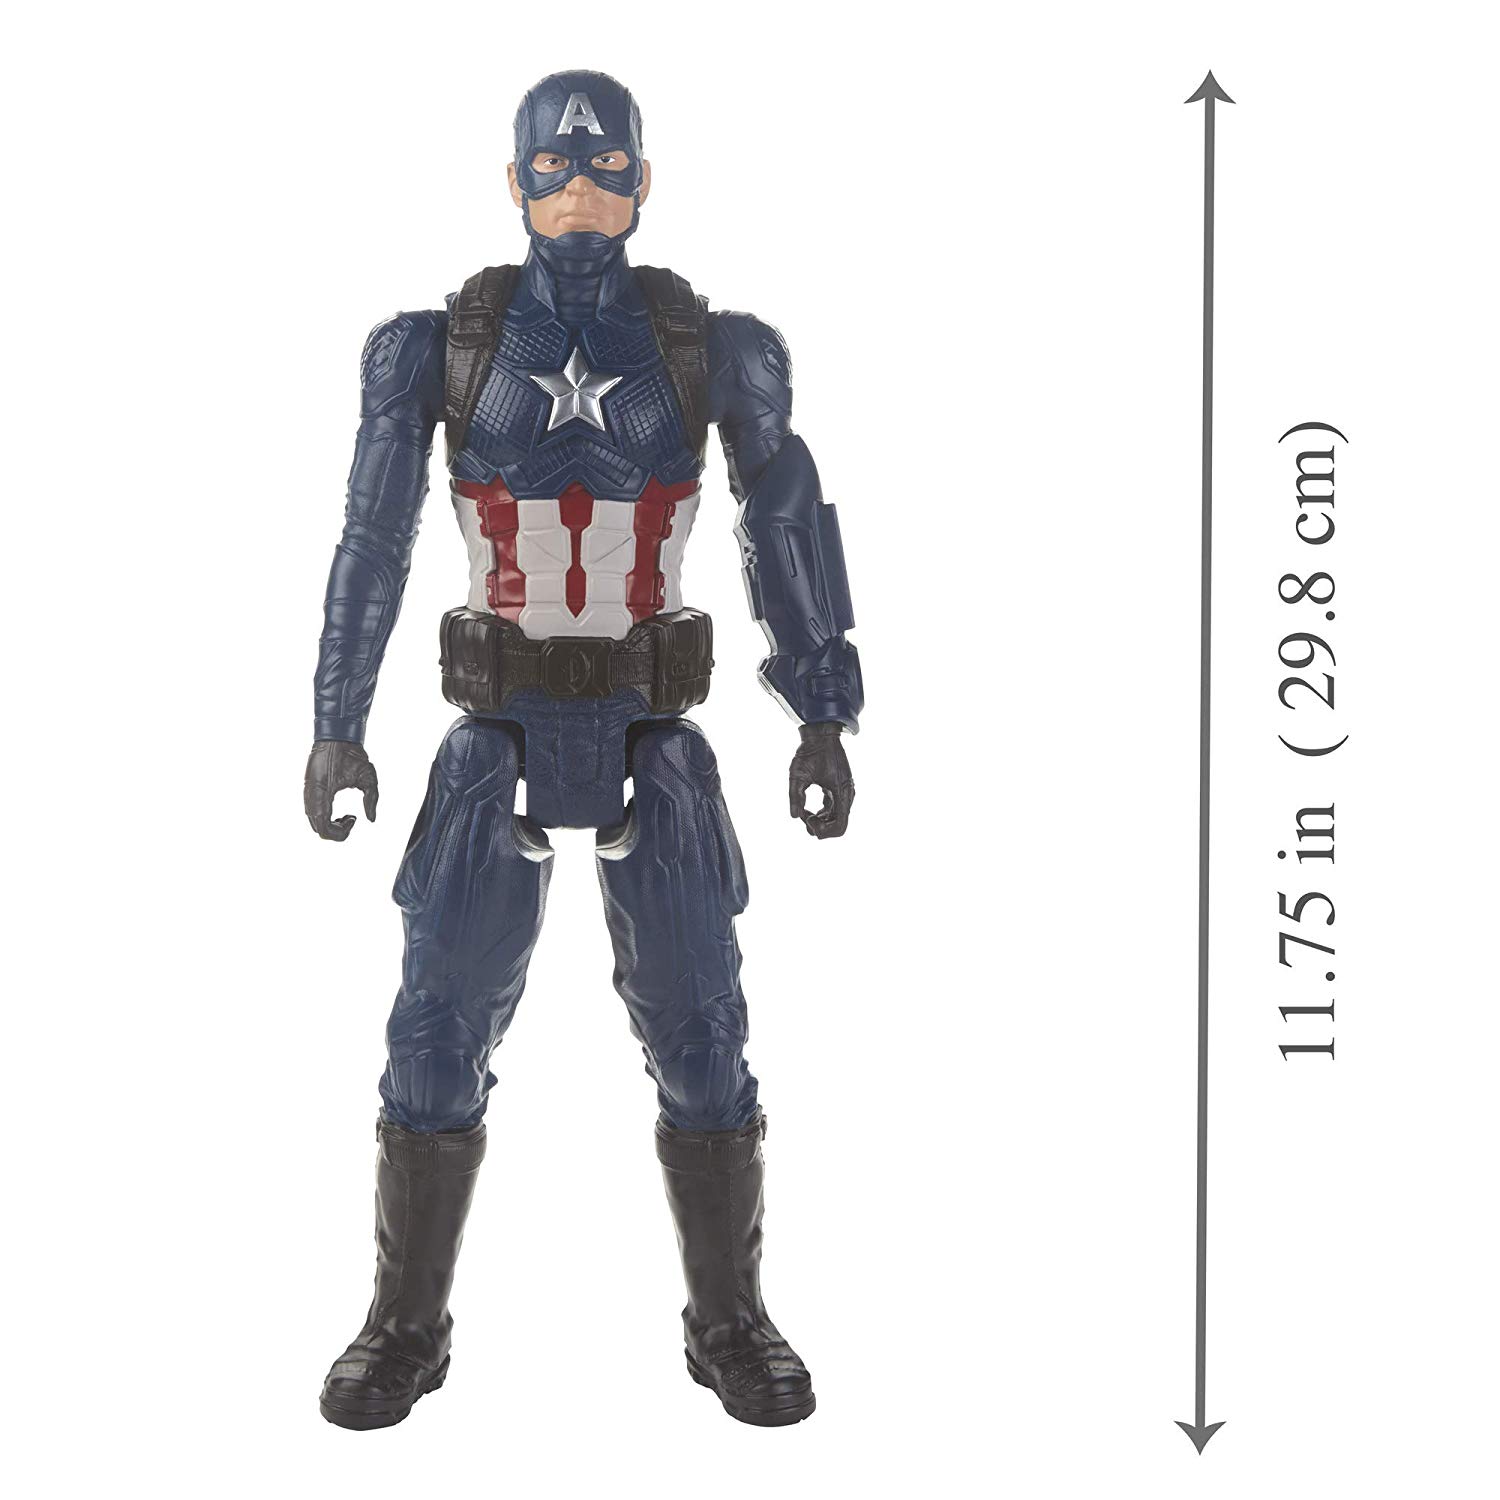 Boneco Titan Hero 2.0 Capitão América, Avengers novo 2019